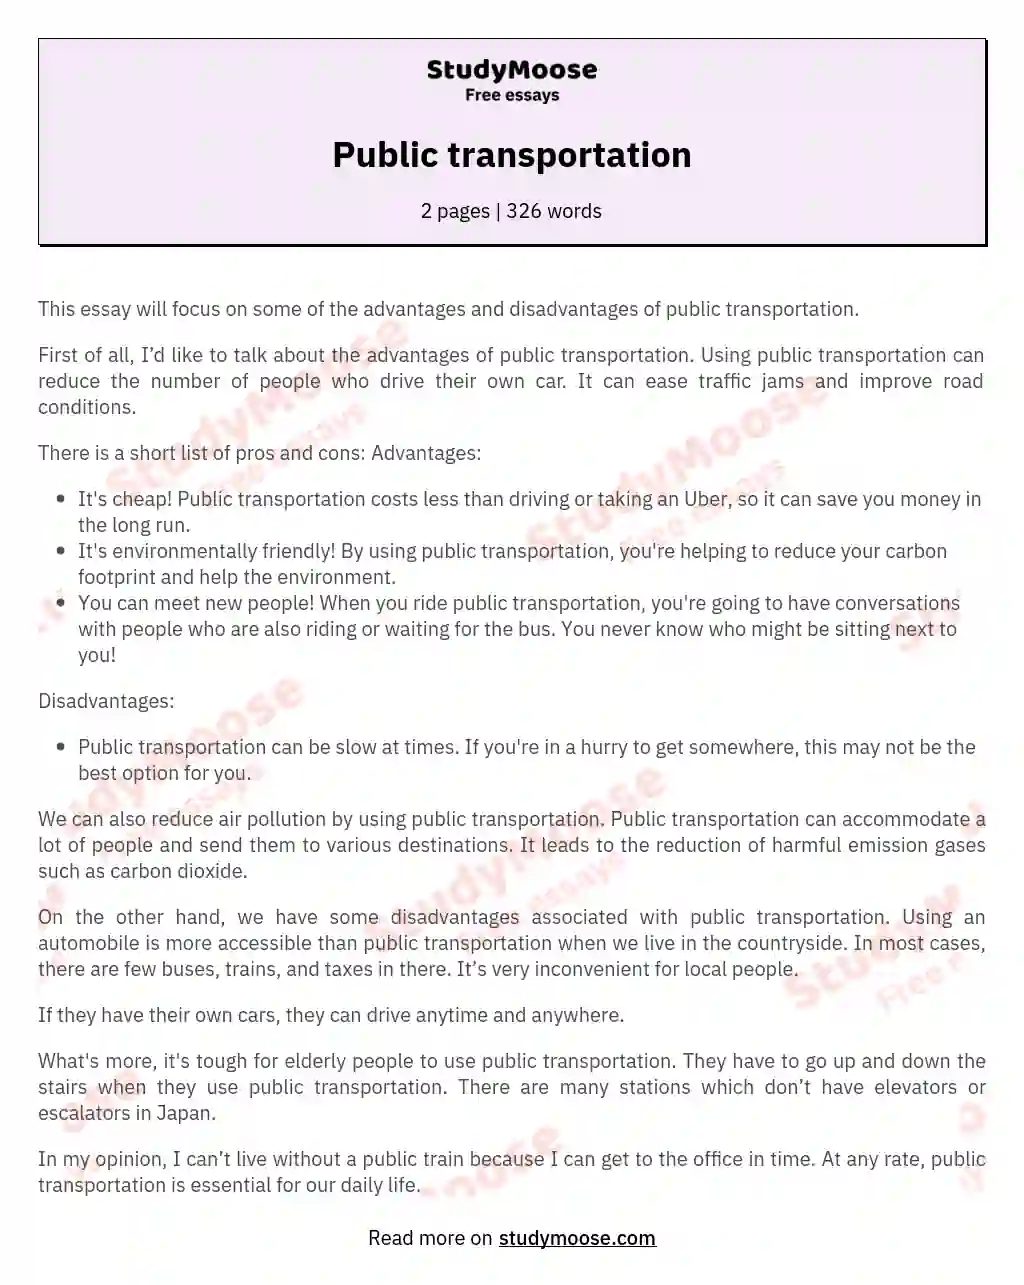 Public transportation essay